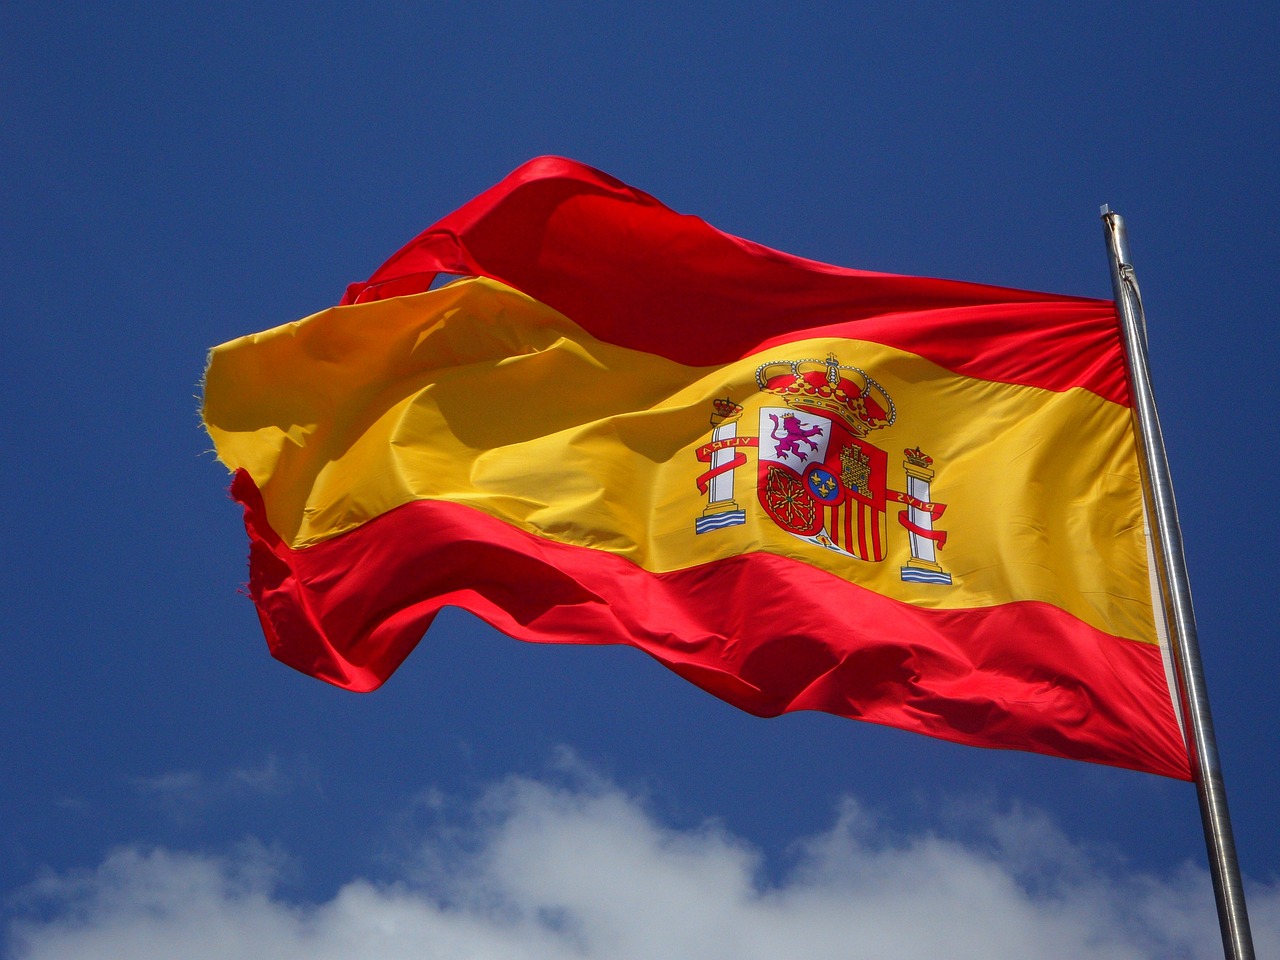 La bolsa española se muestra débil y la mayoría de sus valores tienen mal aspecto